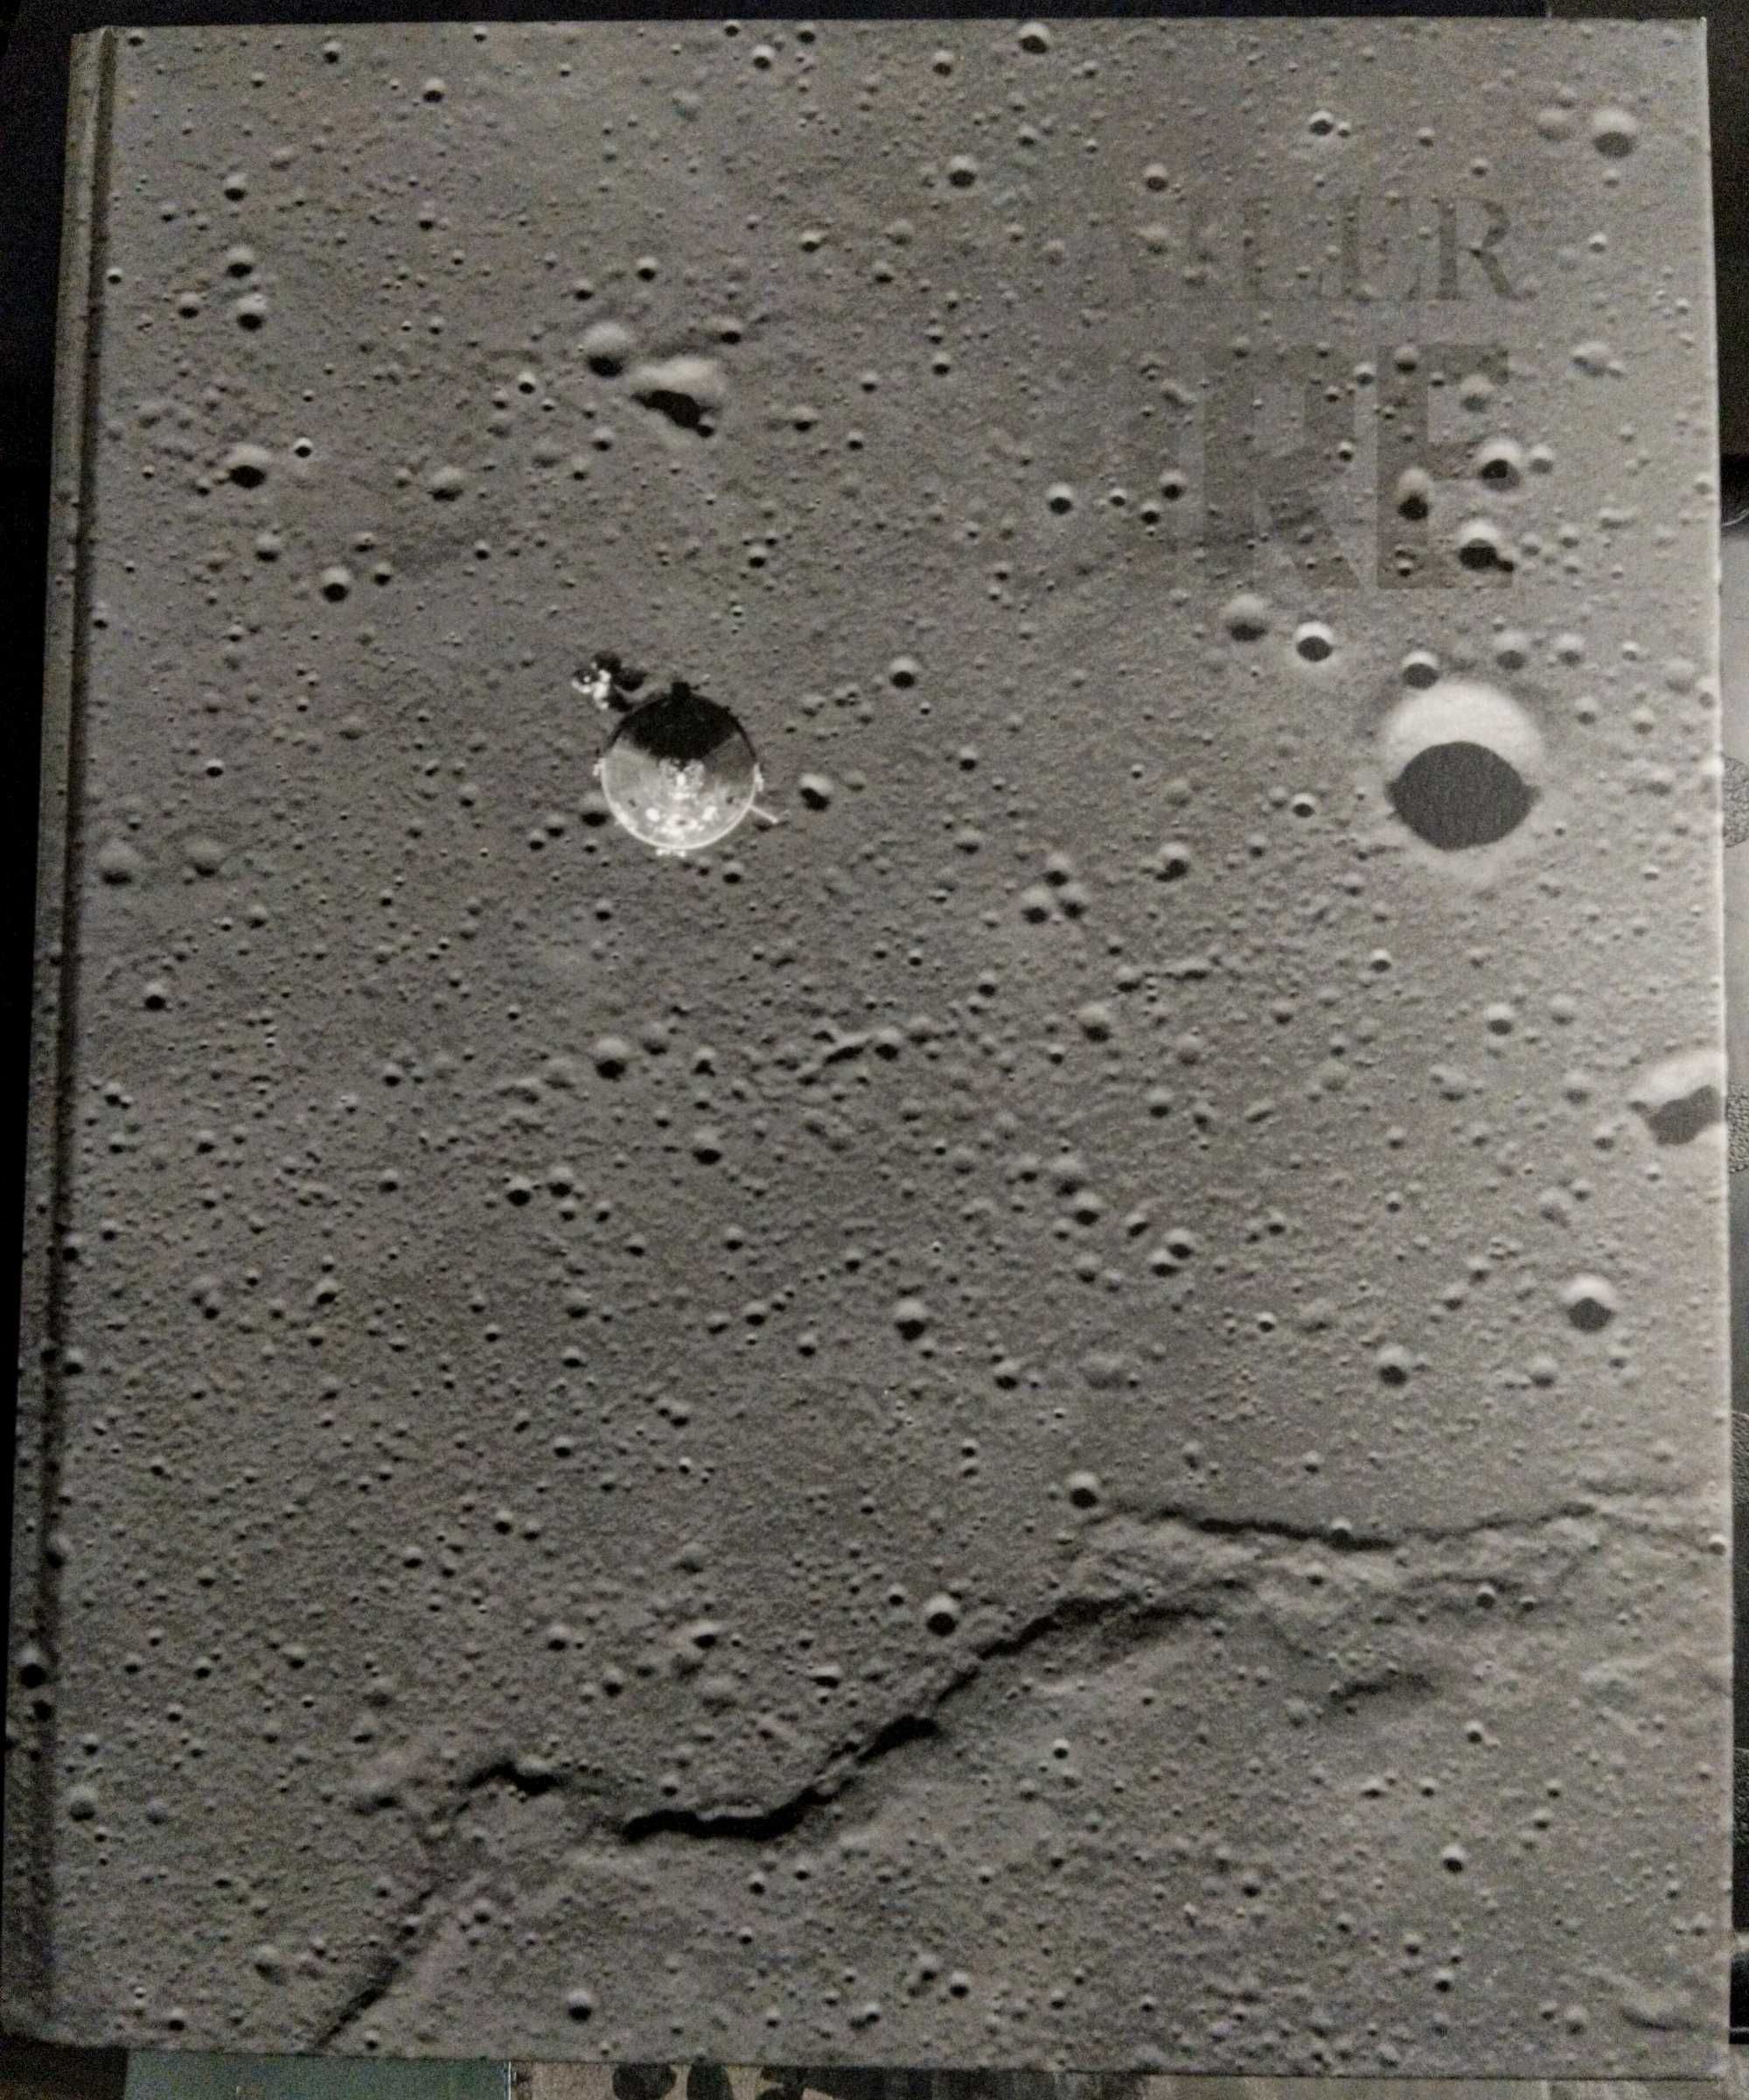 Livro MOONFIRE de Norman Mailer - A Épica Jornada da Apollo 11